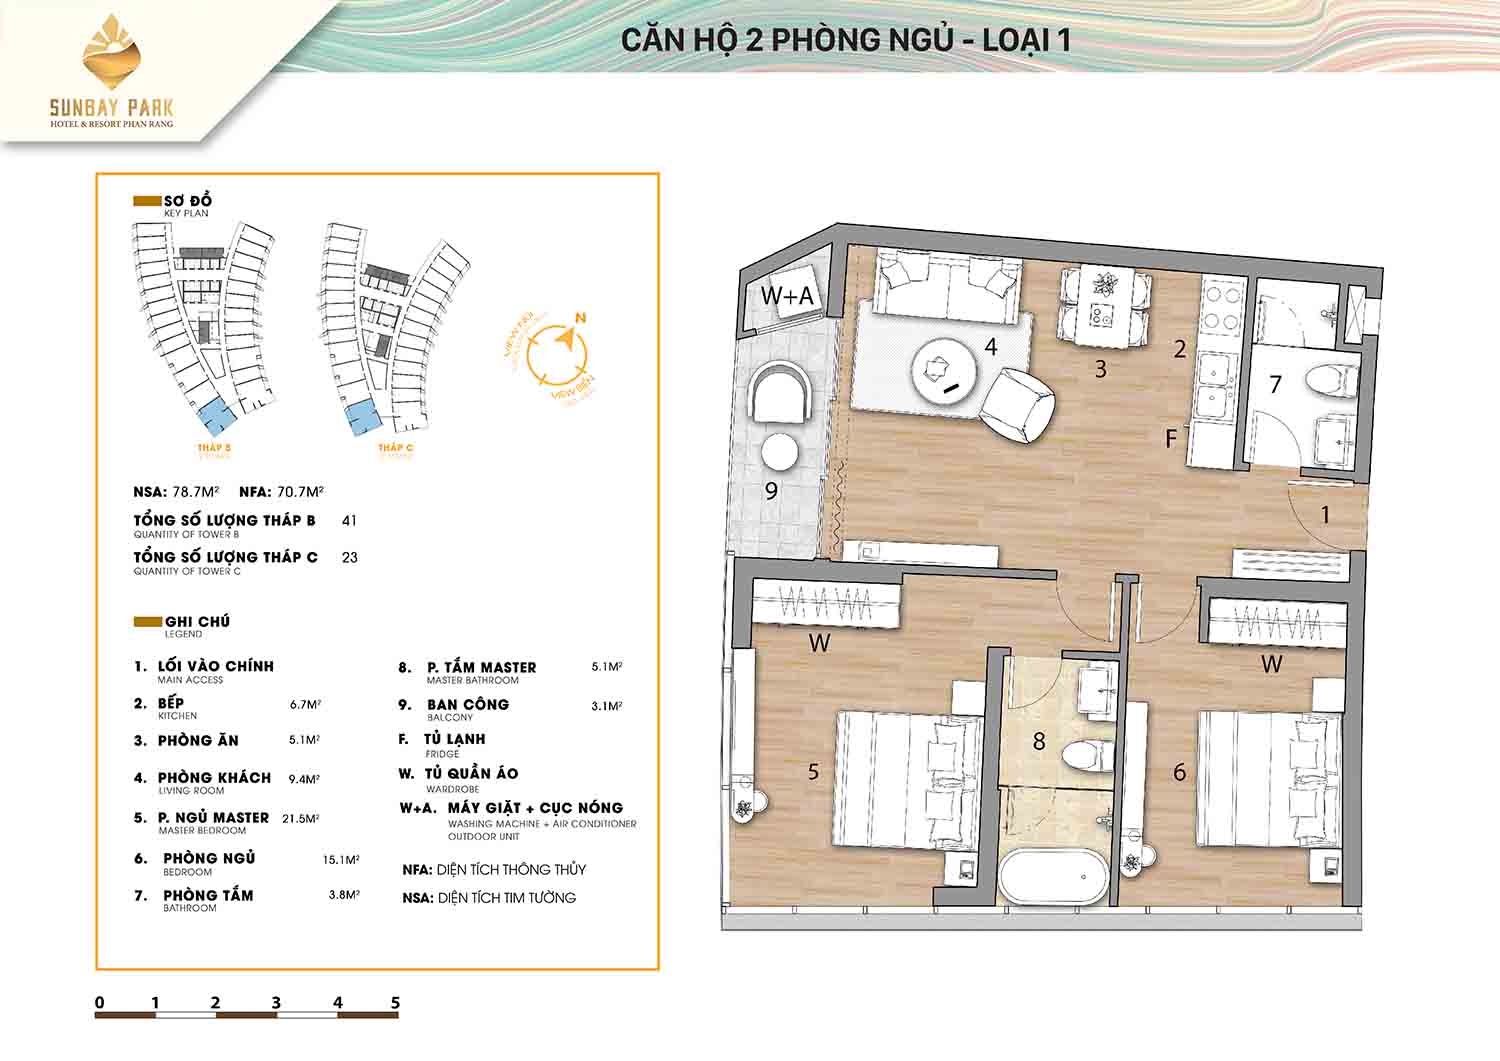 Thiết kế căn hộ 2 phòng ngủ loại 1 78,2m2 dự án Sunbay Park Phan Rang Ninh Thuận